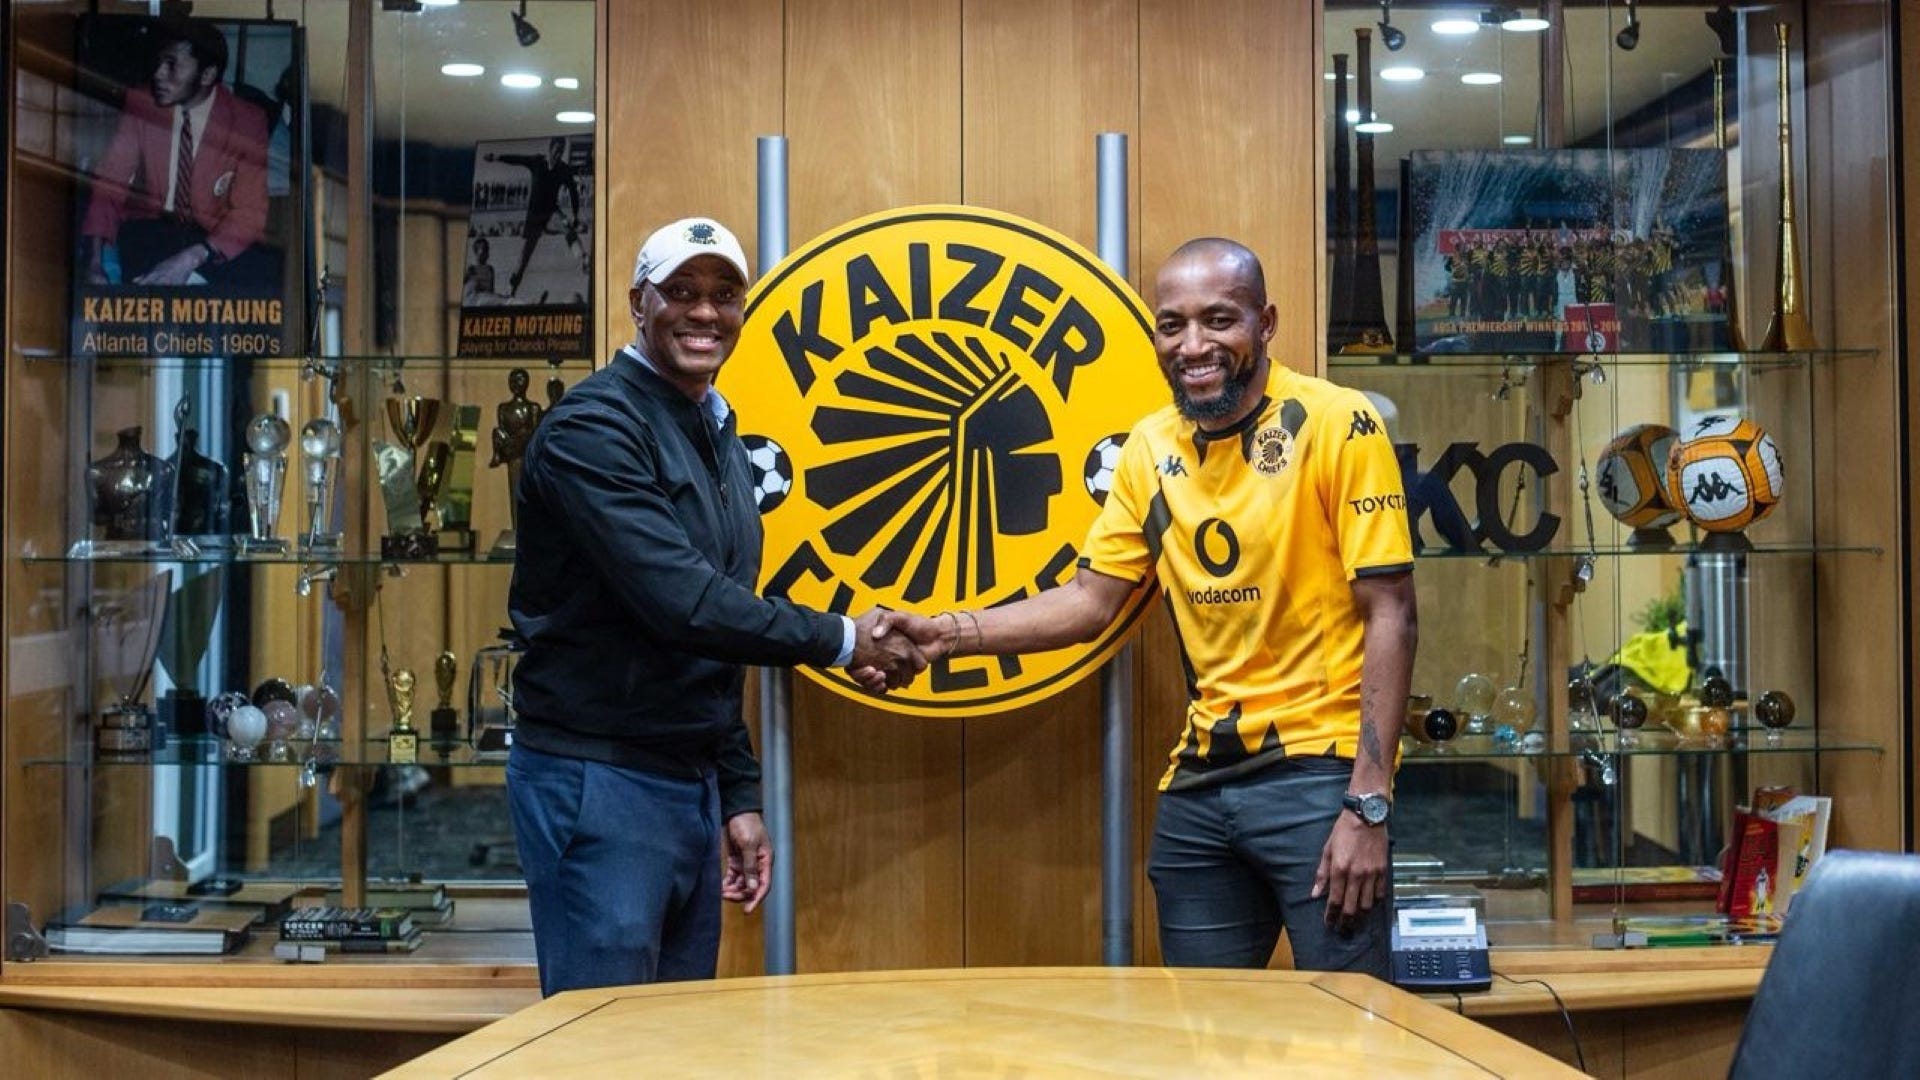 Sibongiseni Mthethwa and Kaizer Motaung Jr. of Kaizer Chiefs